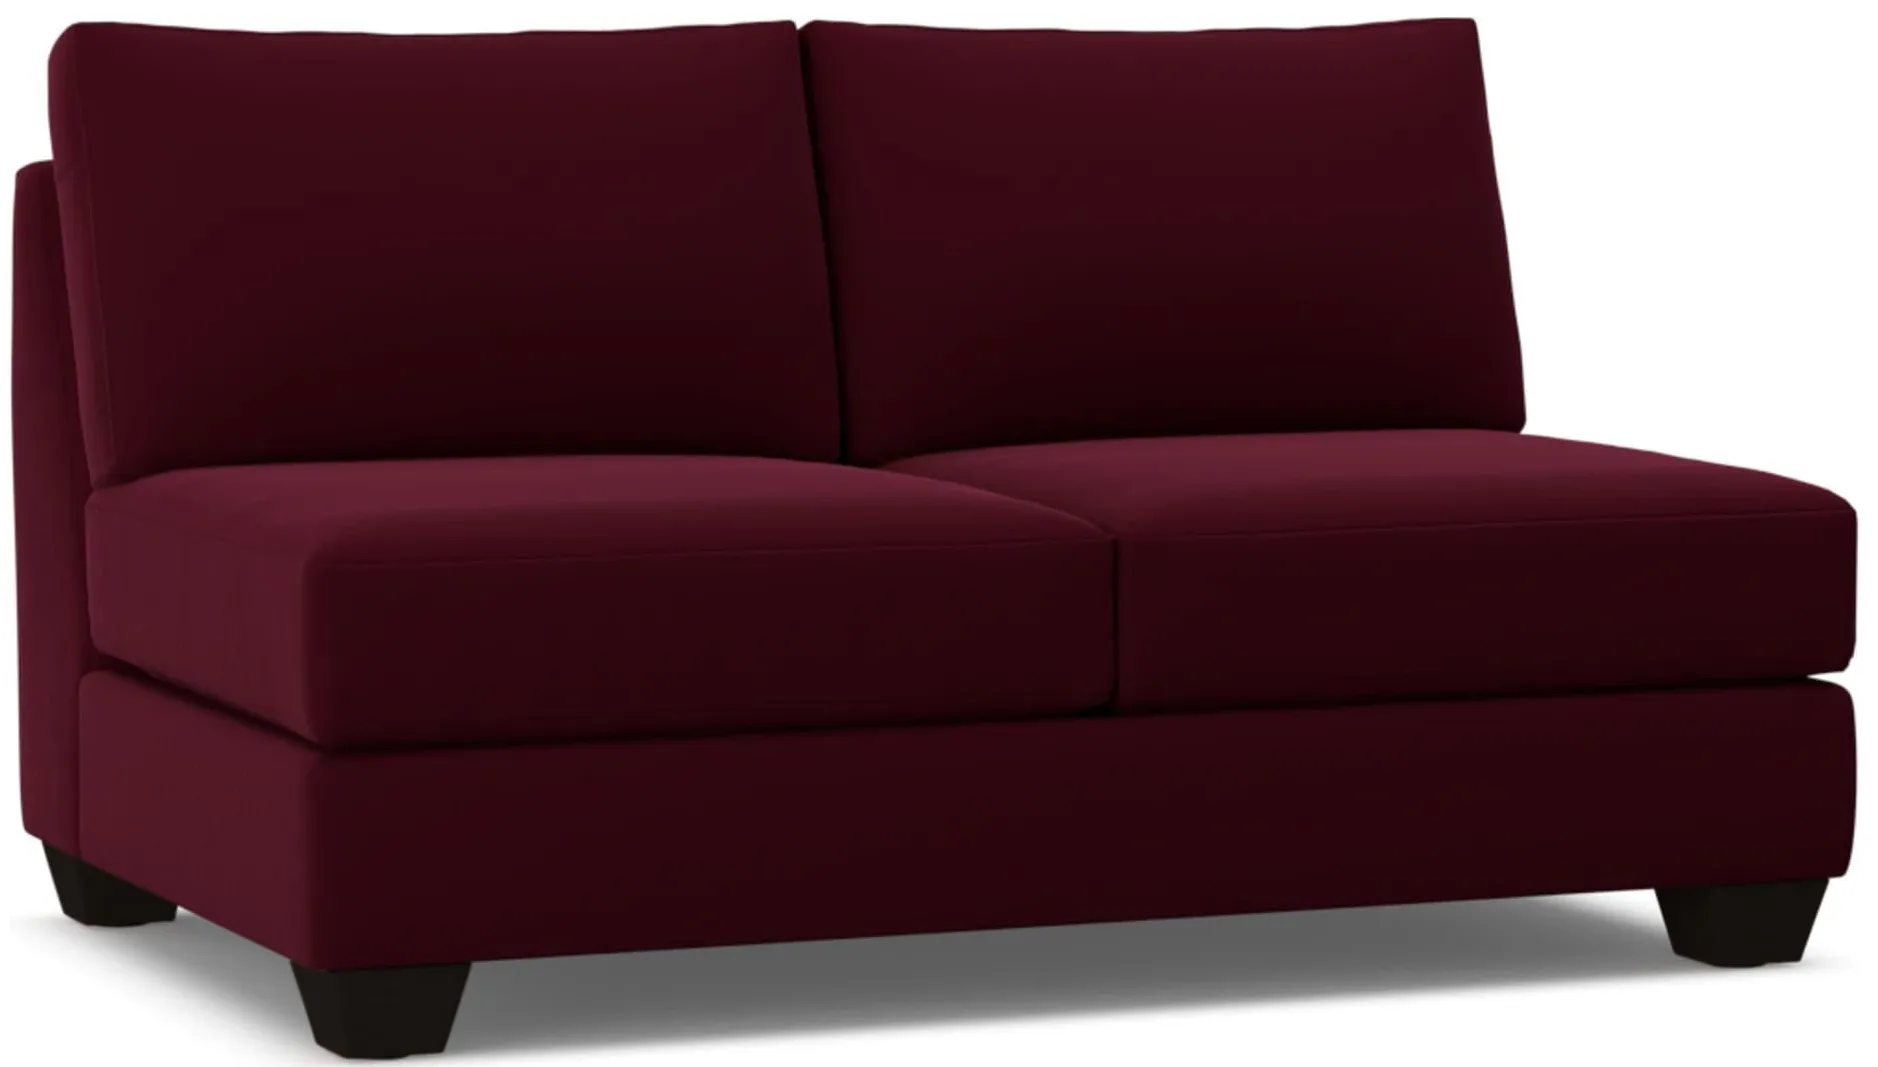 Tuxedo Armless Apartment Size Sofa